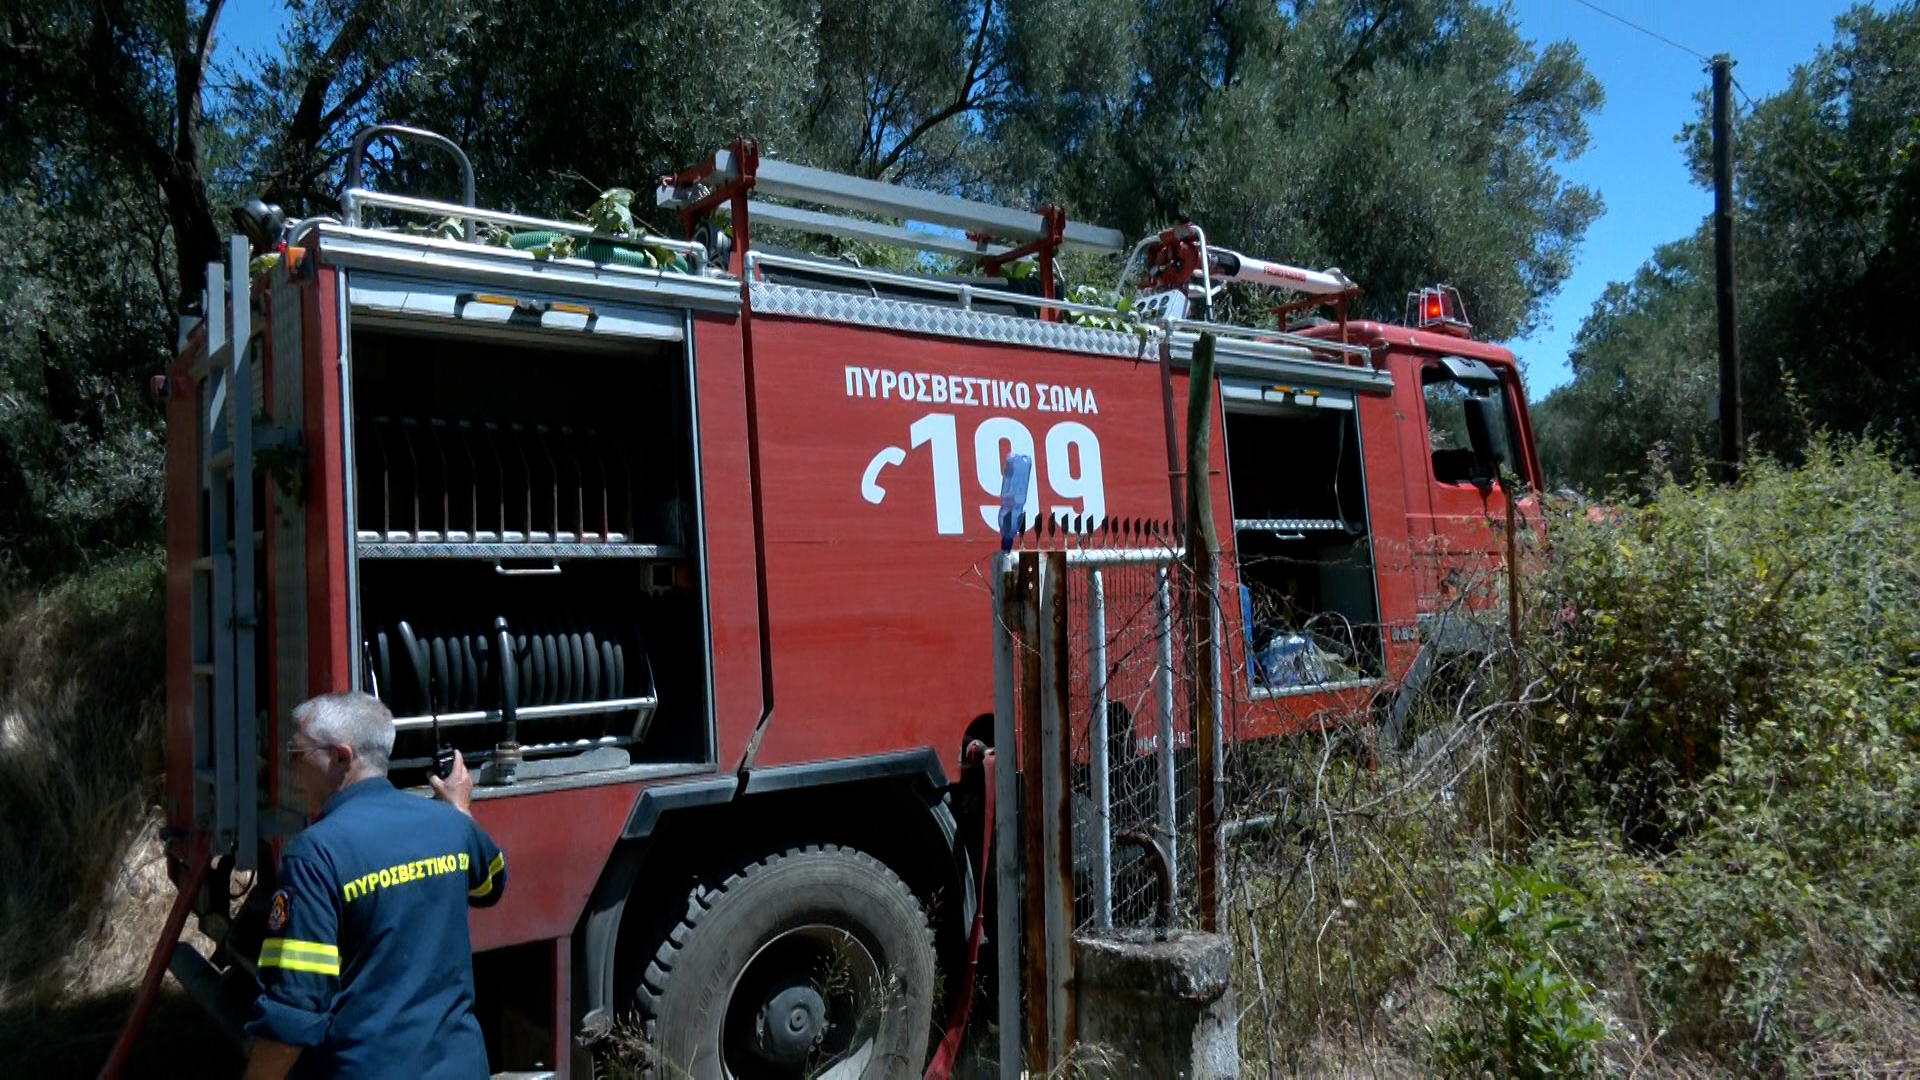 Έκτακτο: Μεγάλη φωτιά στη Χίο – Εστάλη μήνυμα από το 112 για εκκένωση περιοχών